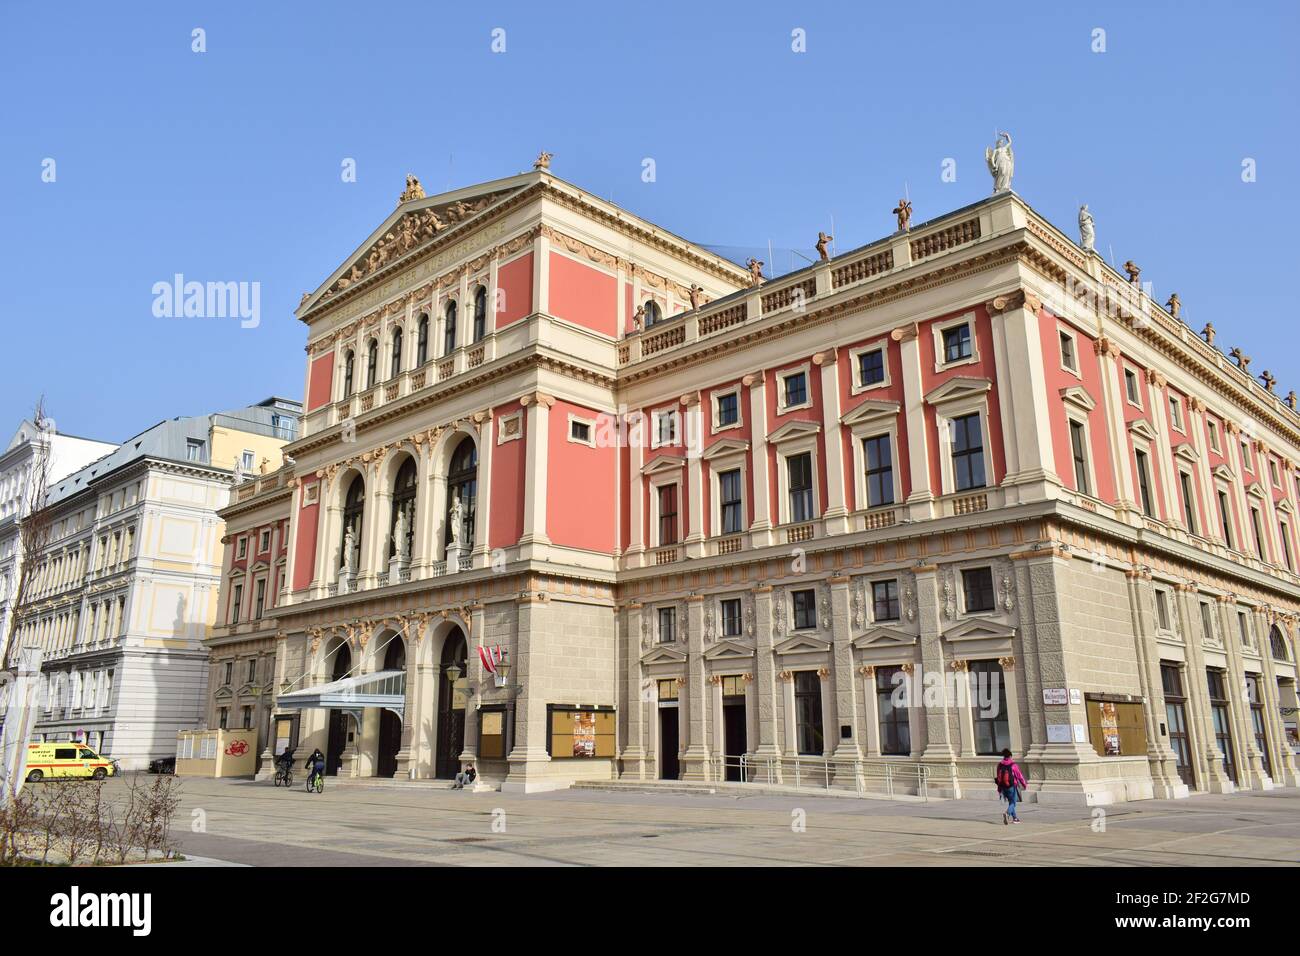 WIEN, ÖSTERREICH - 23. FEBRUAR 2021: Wiener Musikverein Gebäude, ein berühmter Konzertsaal in Wien. Eröffnet im Jahr 1870. Stockfoto